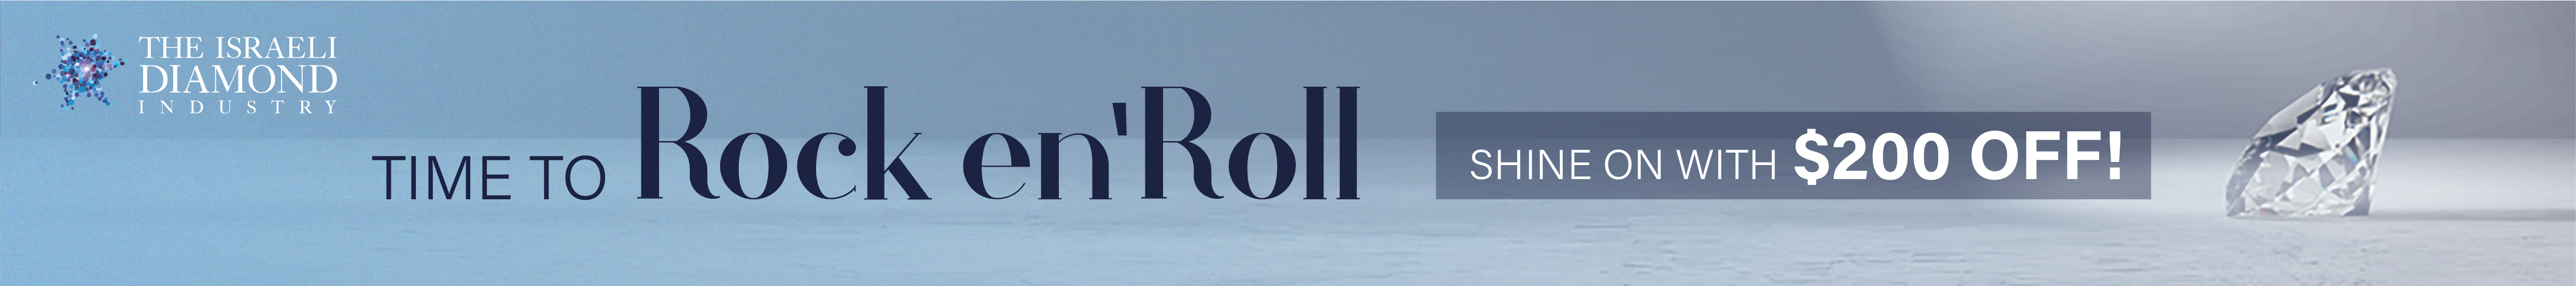  Rock en’Roll campaign by IDI